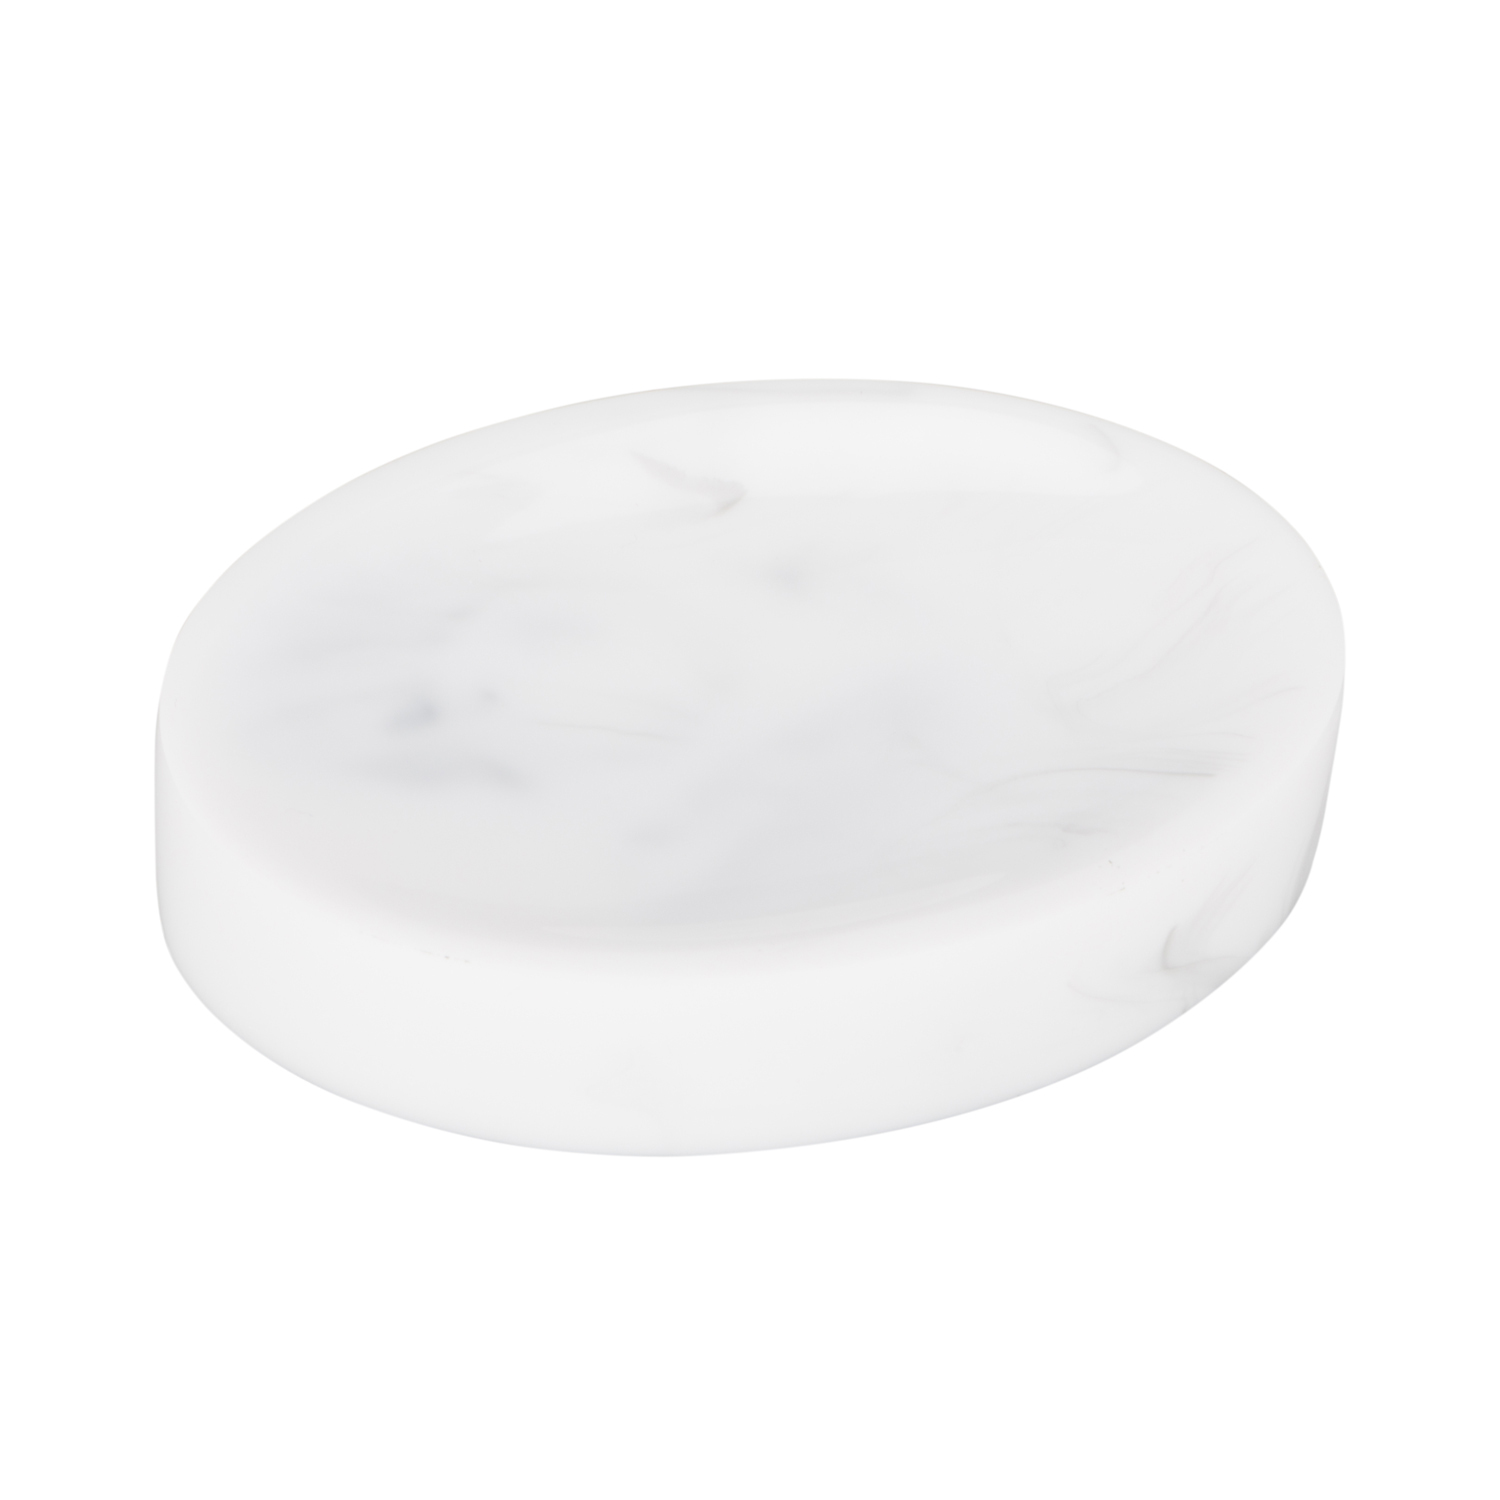 Attica Marble Effect Soap Dish - White Image